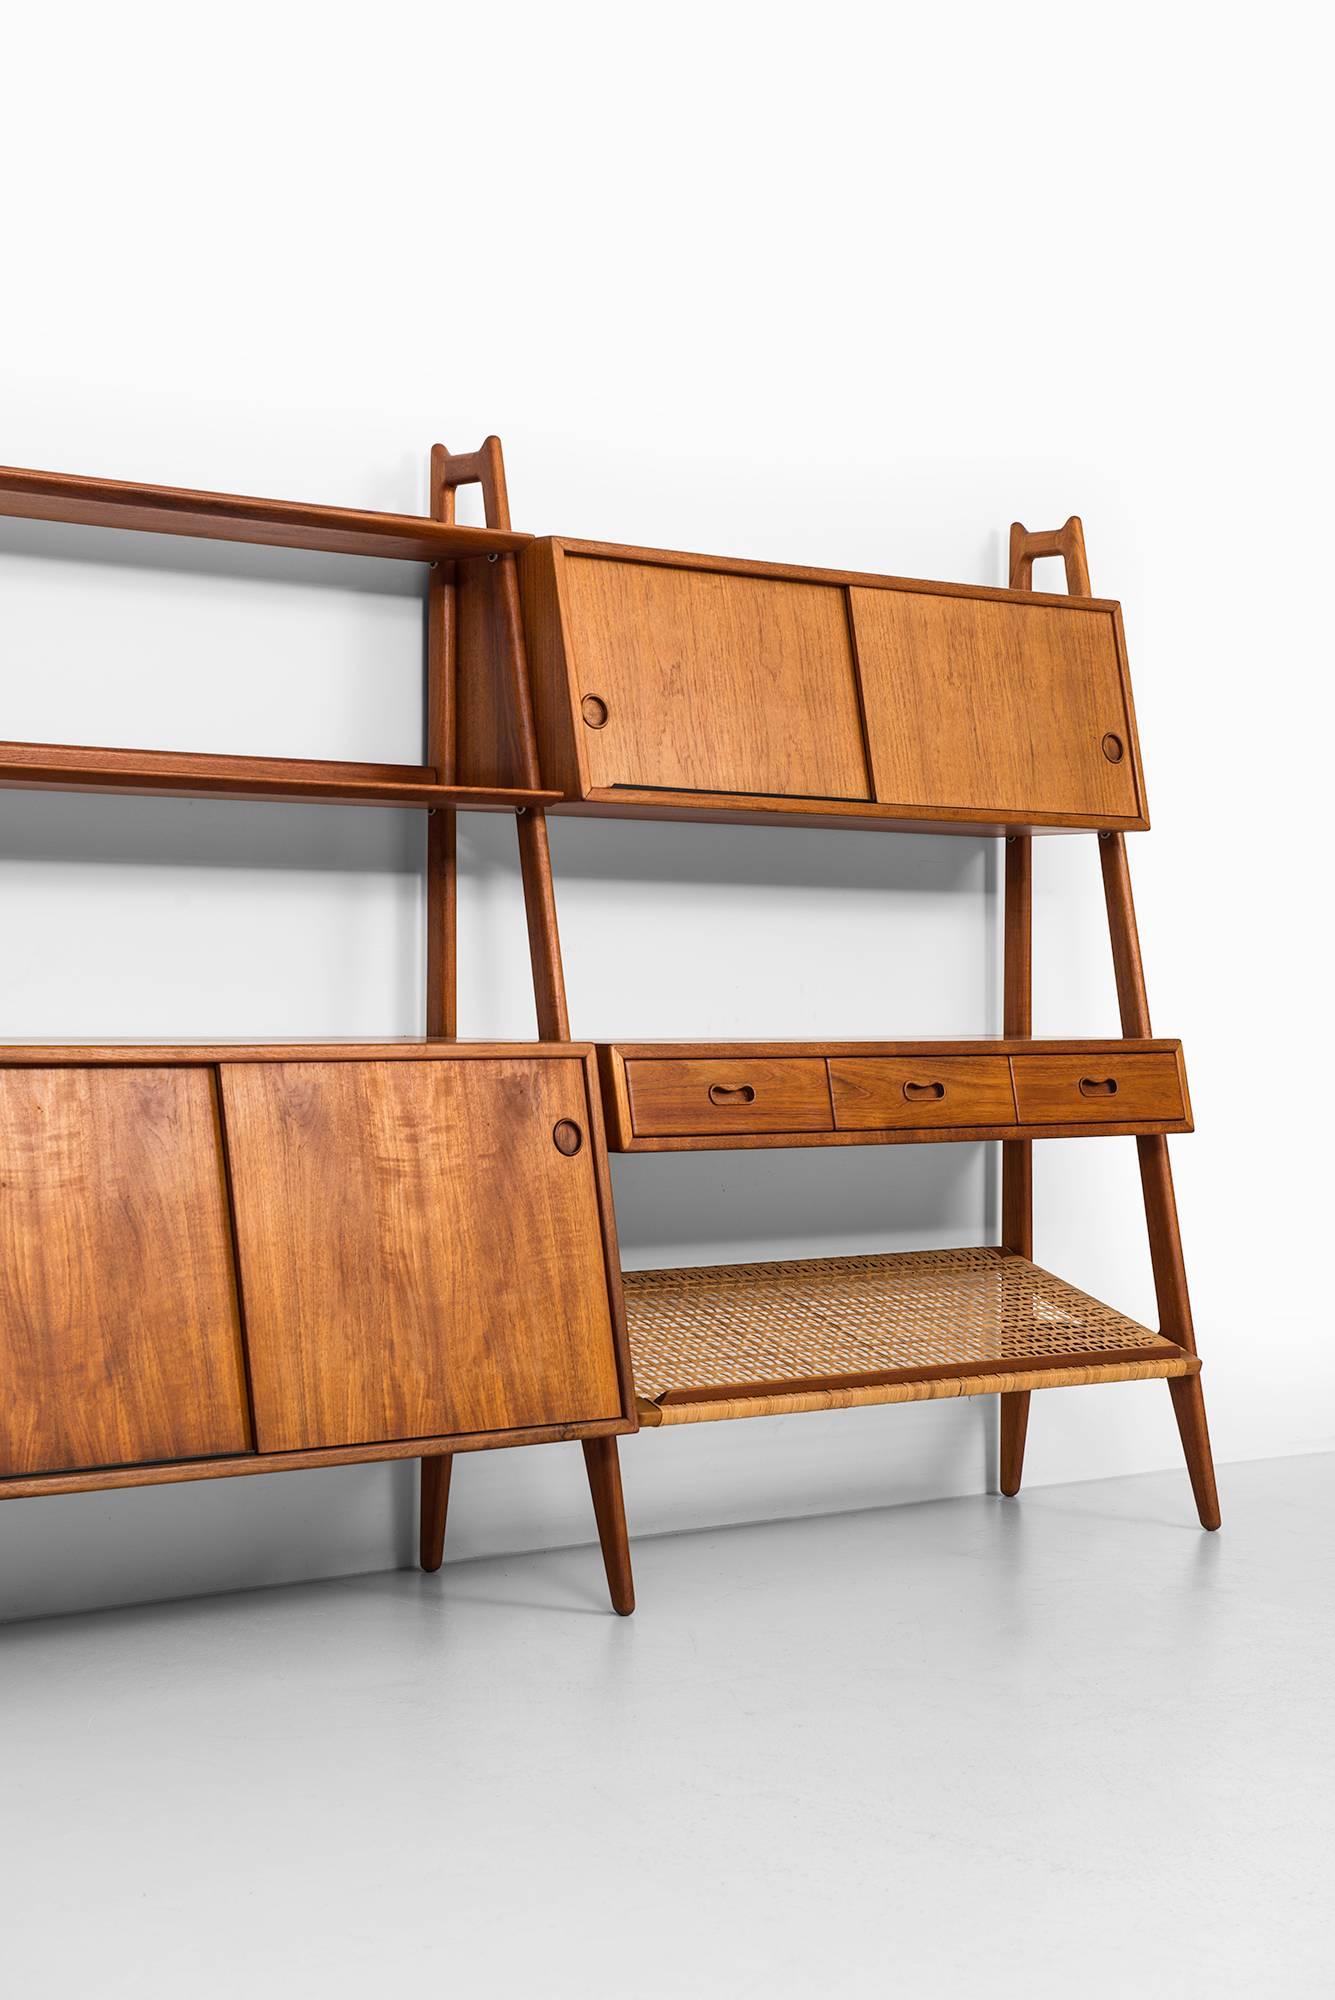 Rare freestanding bookcase designed by Arne Vodder & Anton Borg. Produced by Vamo in Denmark.